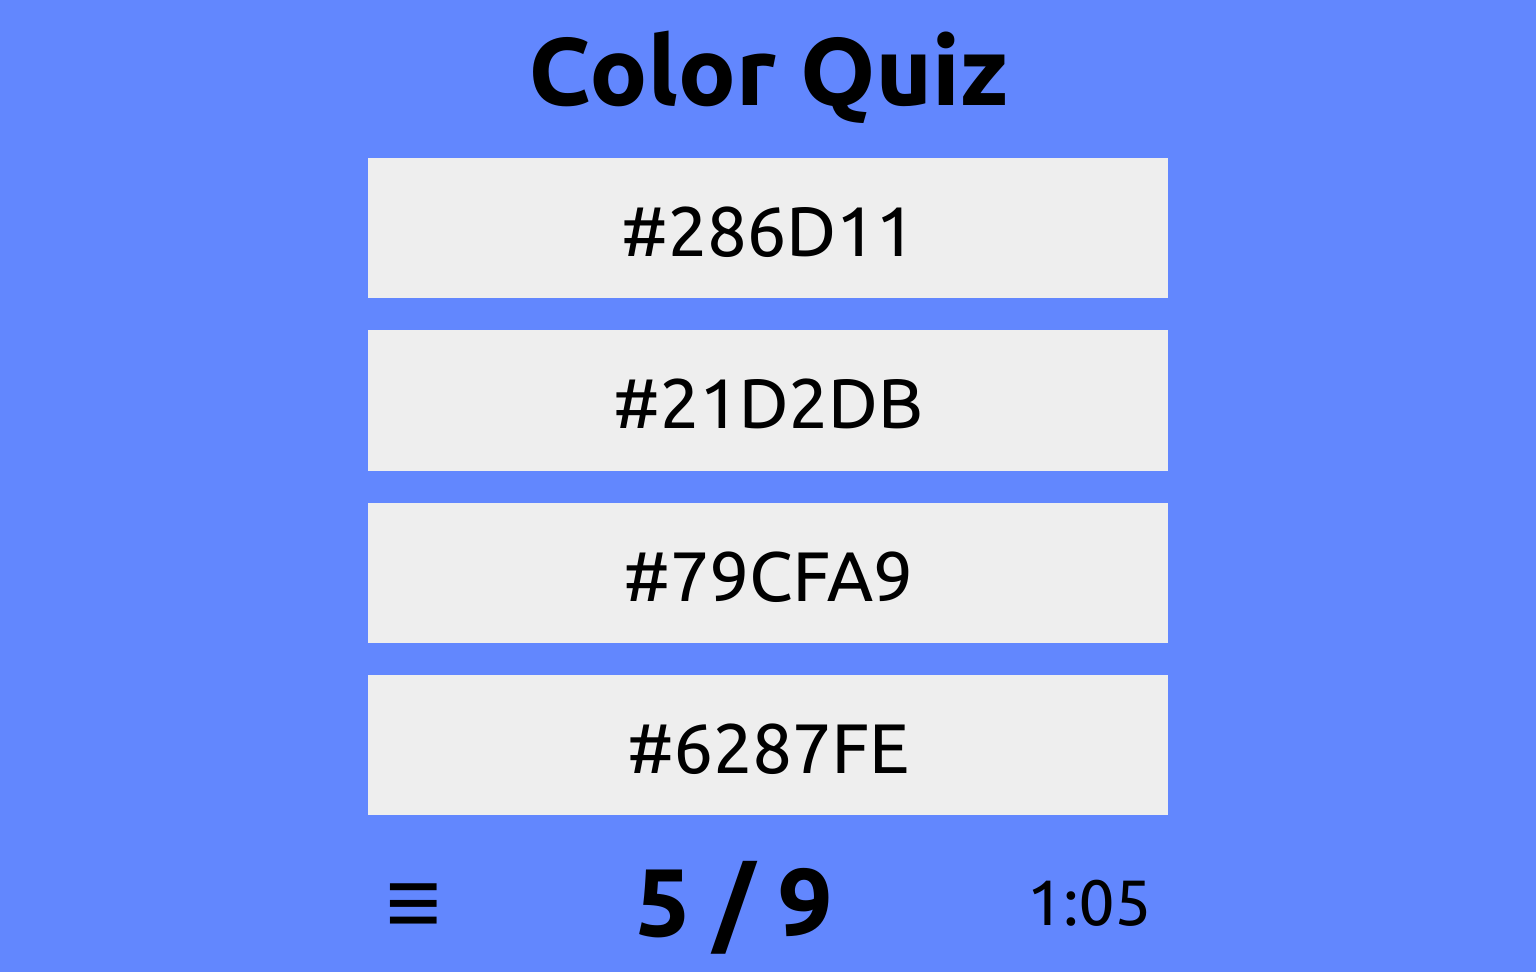 Color quiz